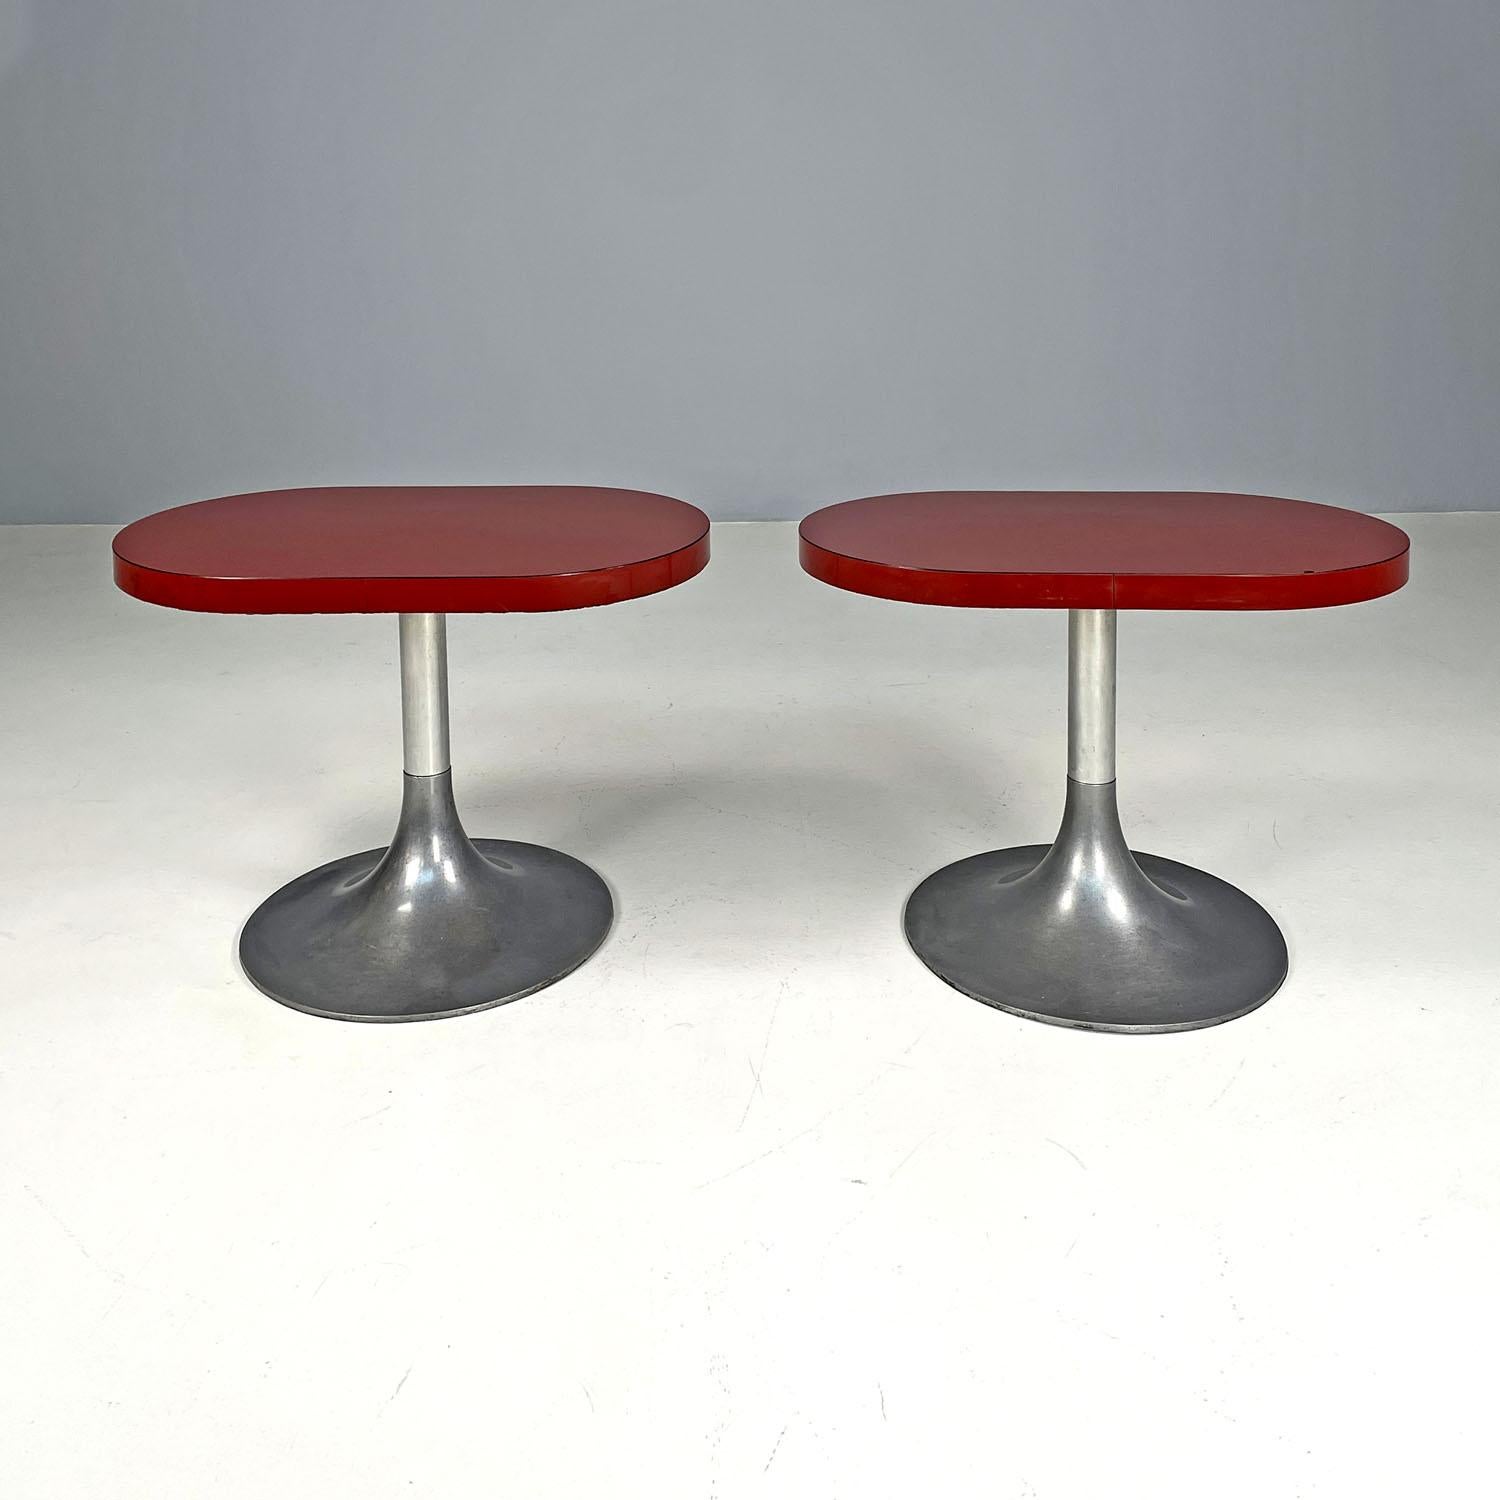 Italienische moderne ovale Couchtische mit roten Laminatplatten, 1980er Jahre 
Paar Couchtische mit ovaler Platte. Die Holzplatte ist mit rotem Laminat überzogen, ebenso wie ihre Dicke. Sie haben einen zentralen Metallstiel und einen Sockel im